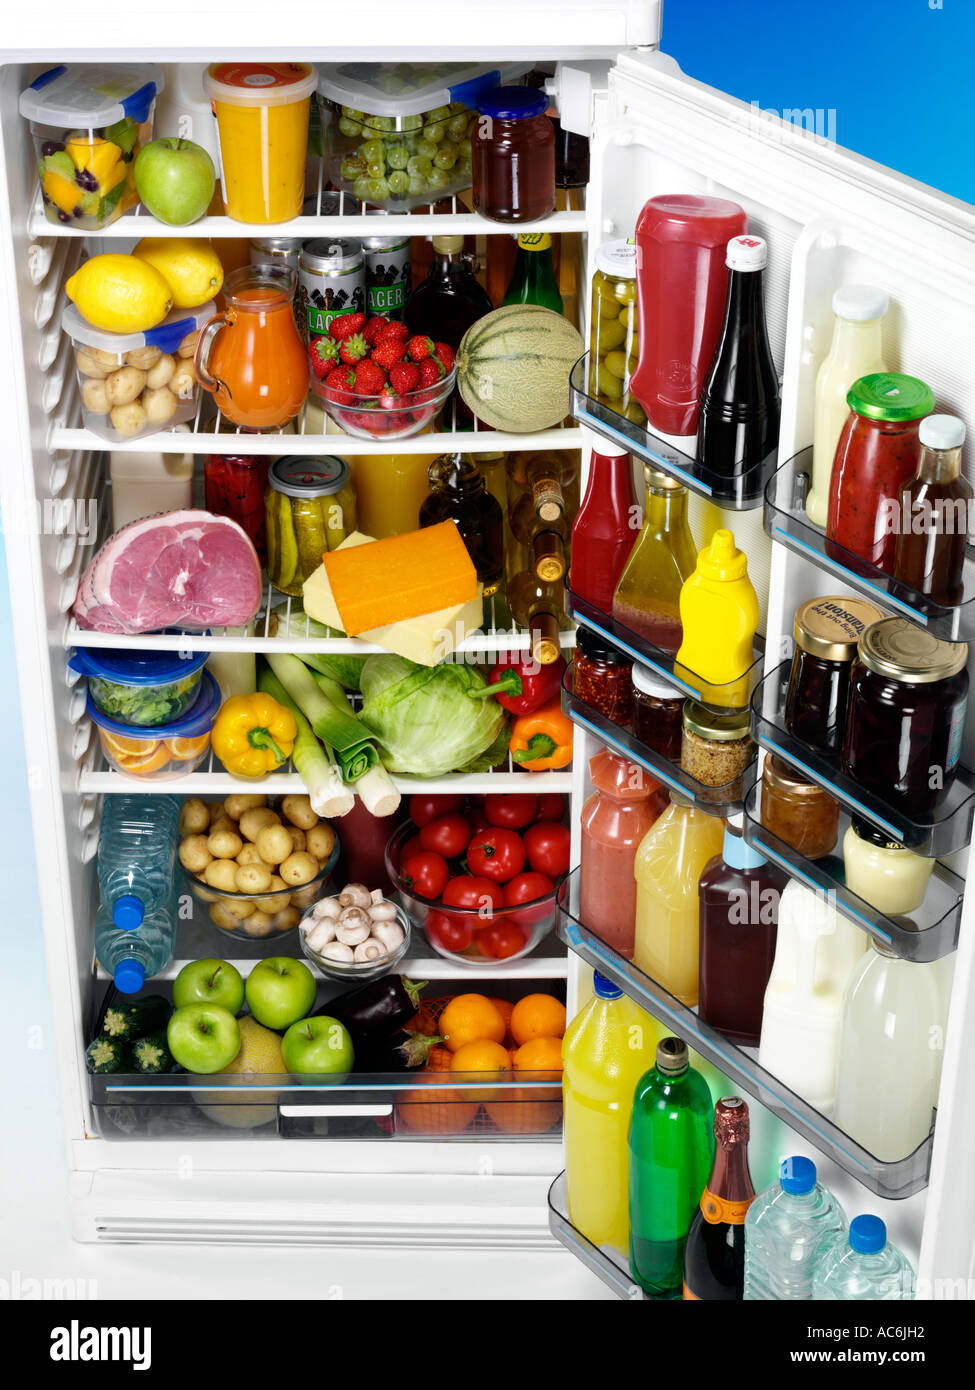 Какой продукт есть в холодильнике. Холодильник с продуктами. Полный холодильник продуктов. Холодильник с едой. Полный холодильник фруктов.